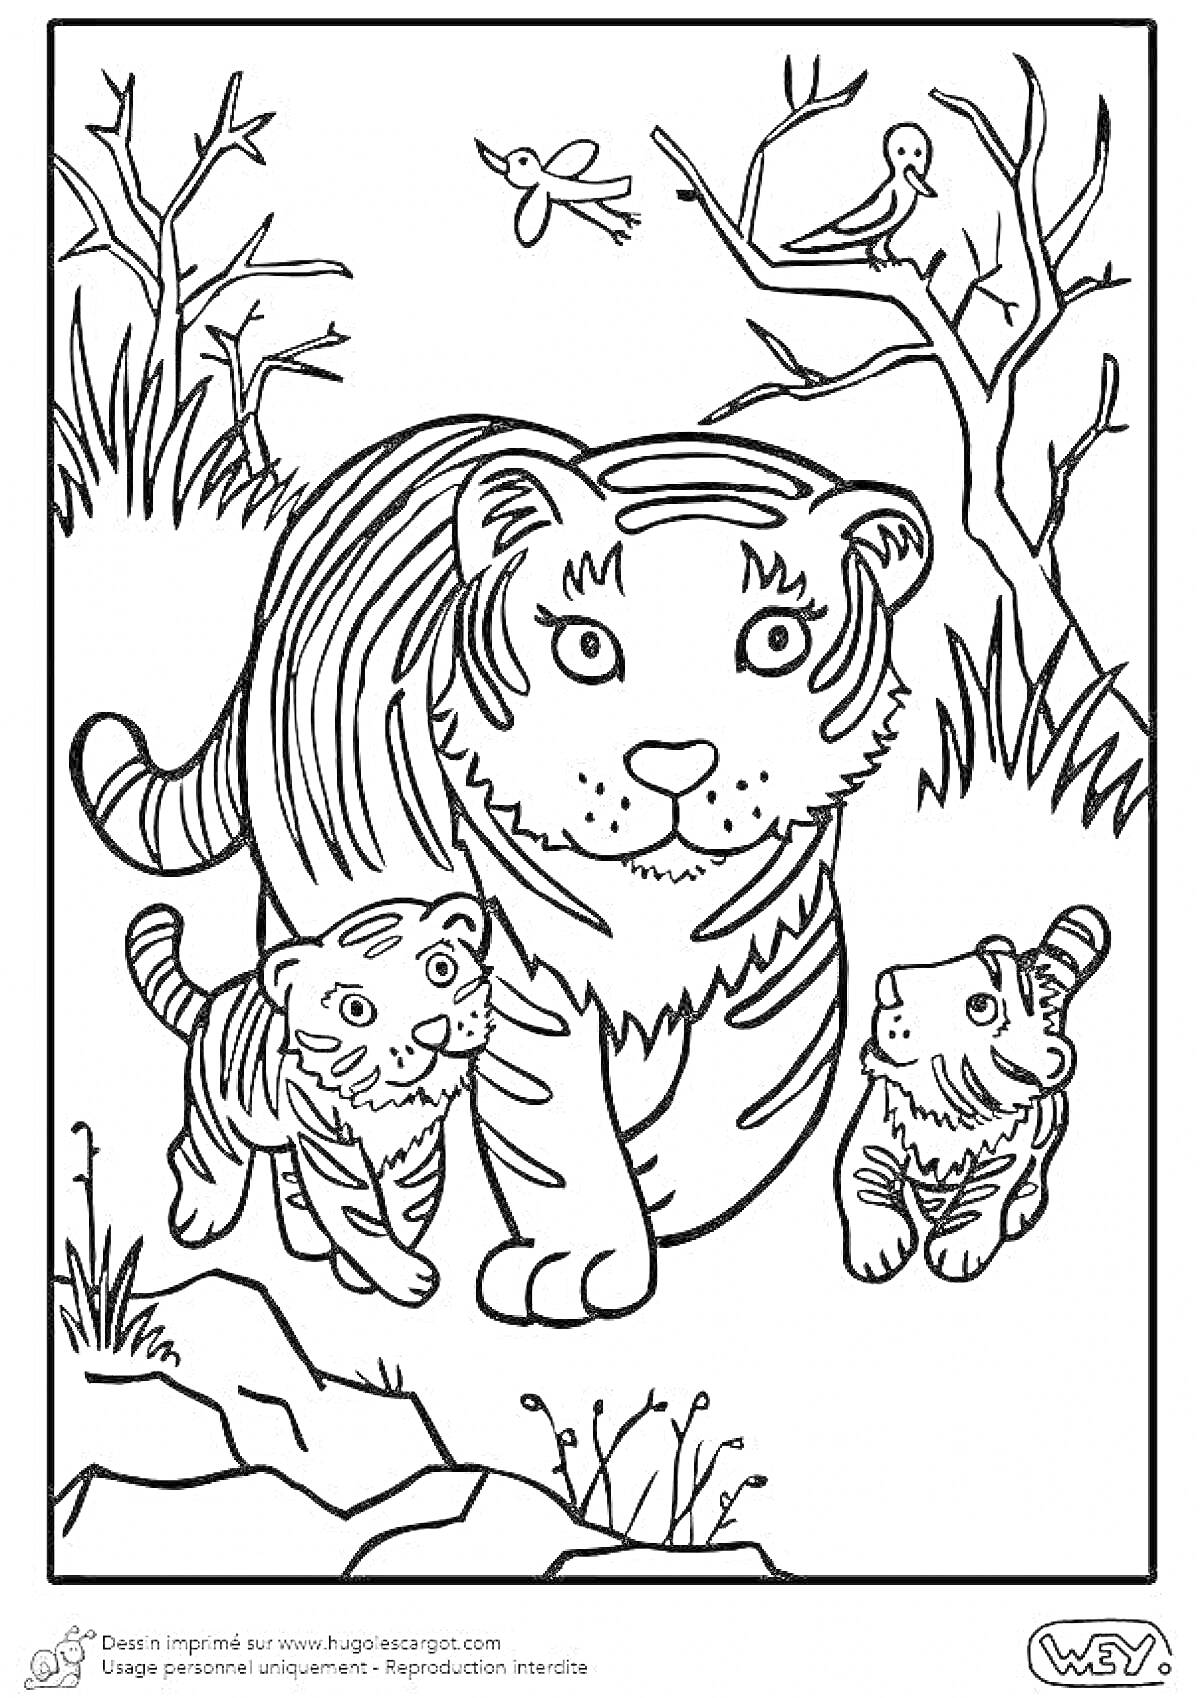 Раскраска Тигрица со своими детенышами возле деревьев и кустов, птицы на деревьях и в полёте